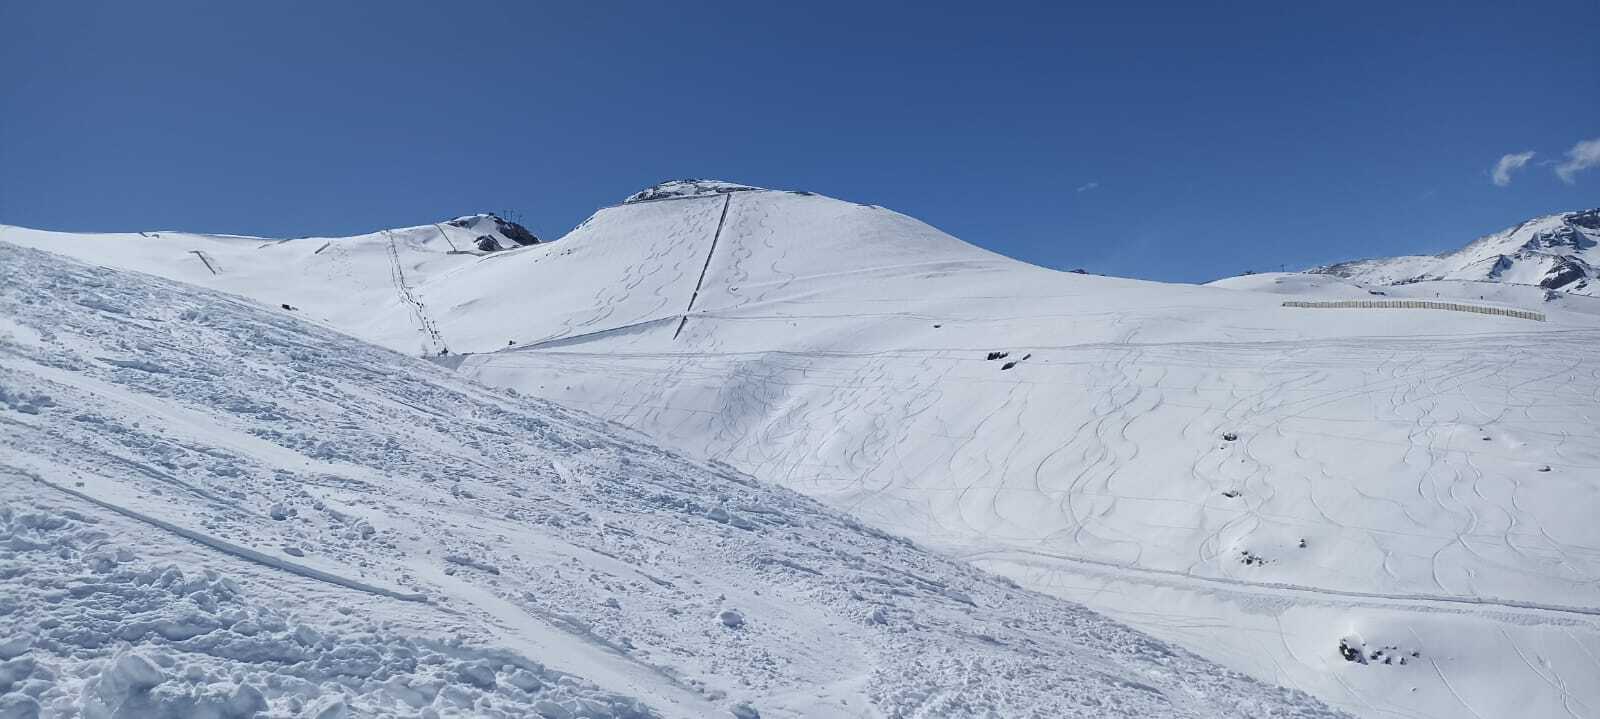 Centro de esqui El Colorado